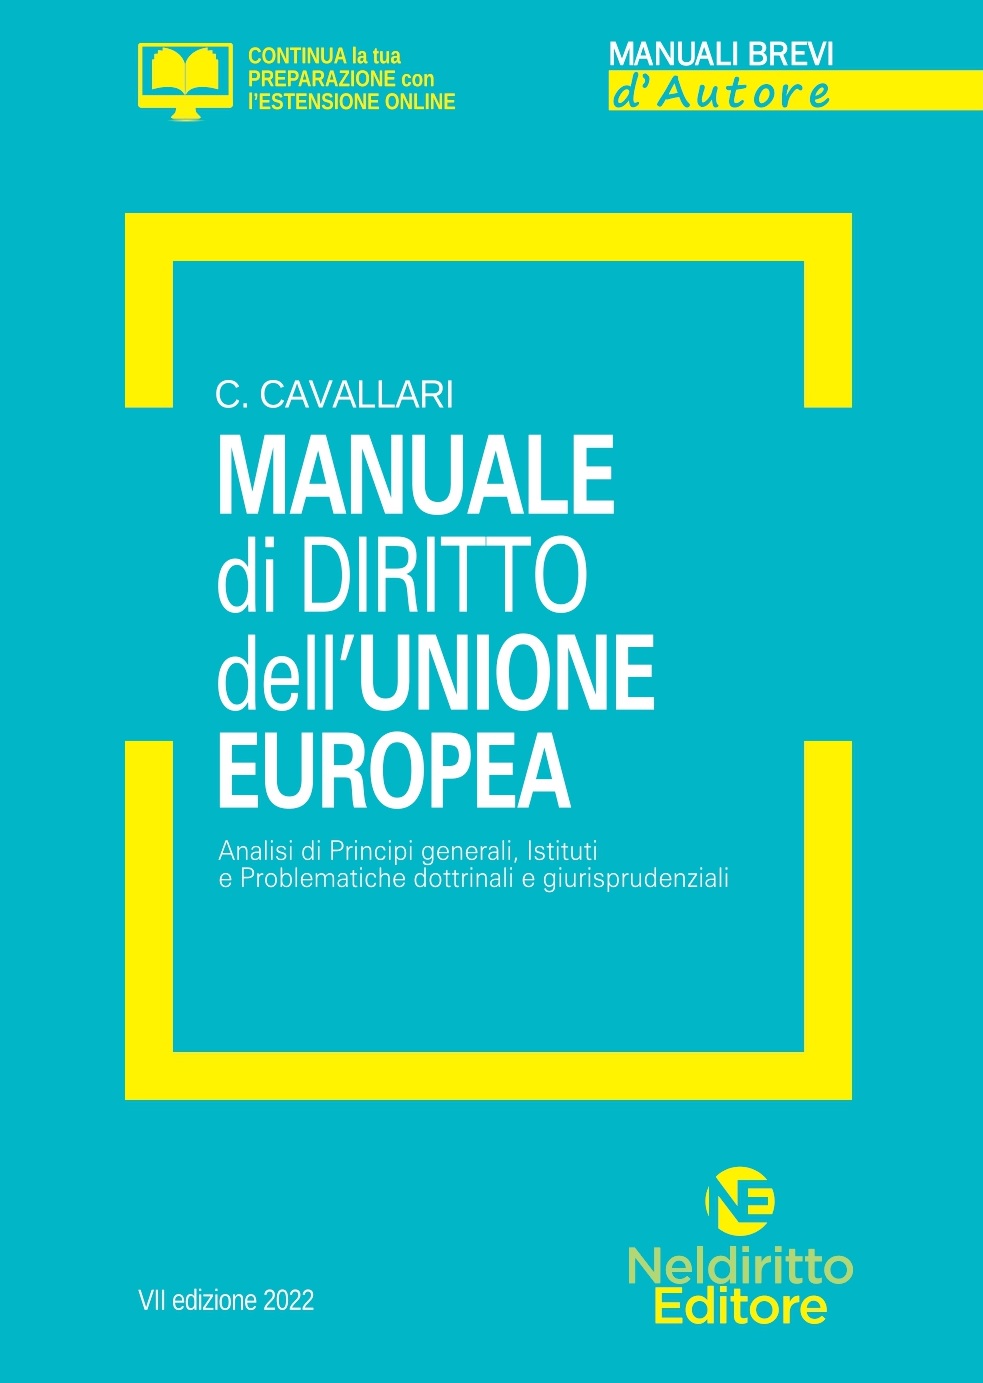 Manuale Breve Di Diritto Dell'Unione Europea 2022